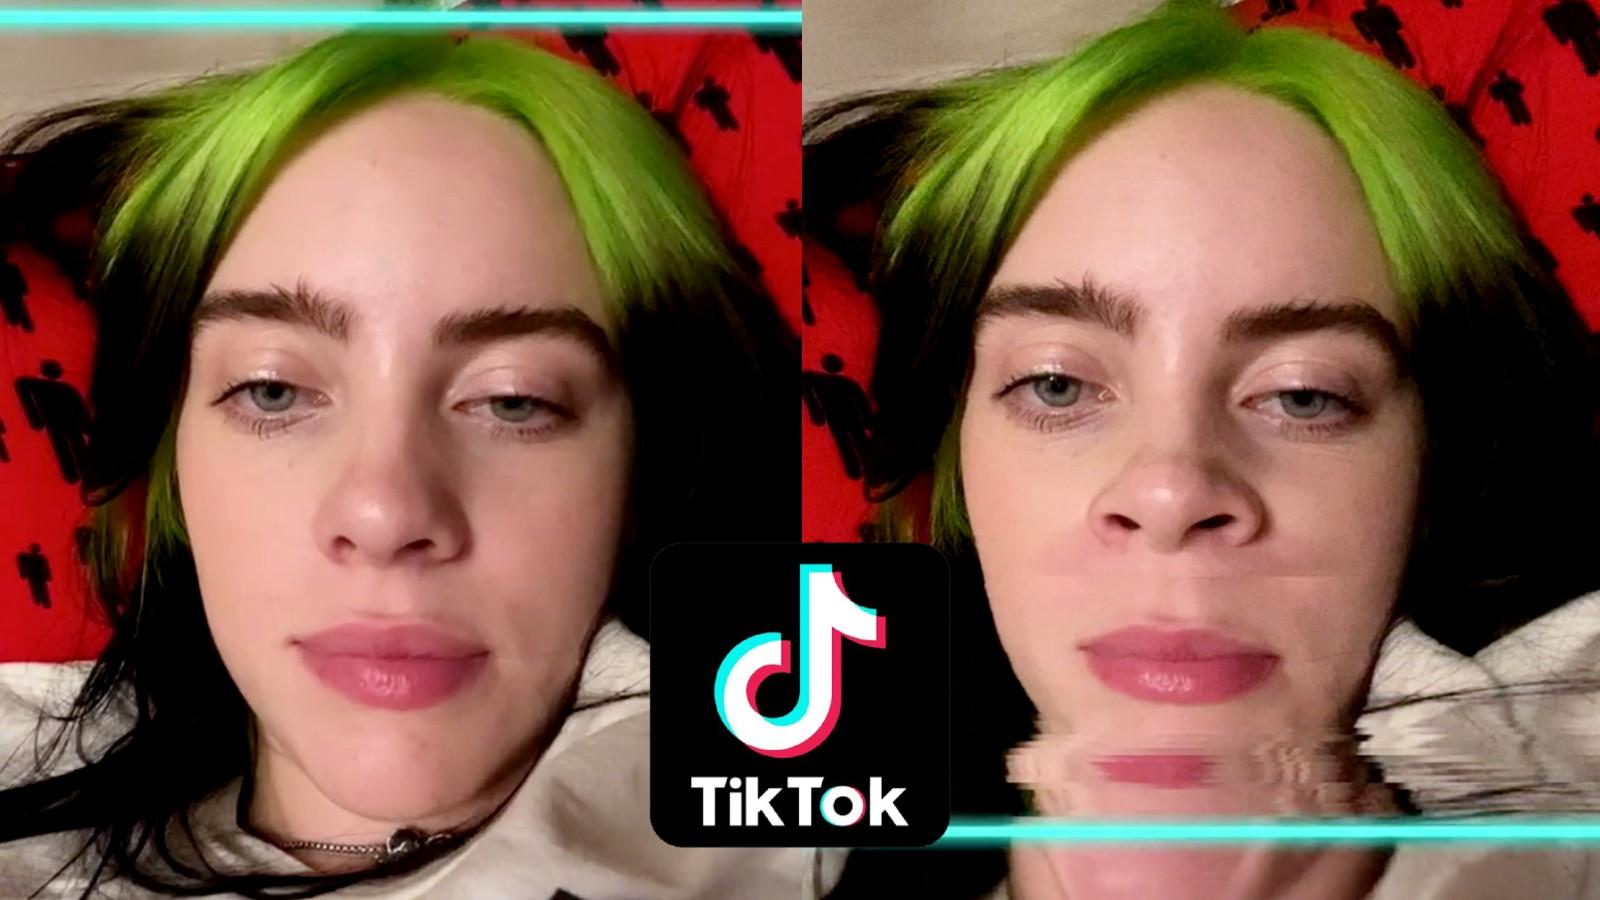 Two images of Billie Eilish using the TikTok timewarp filter, next to the TikTok logo